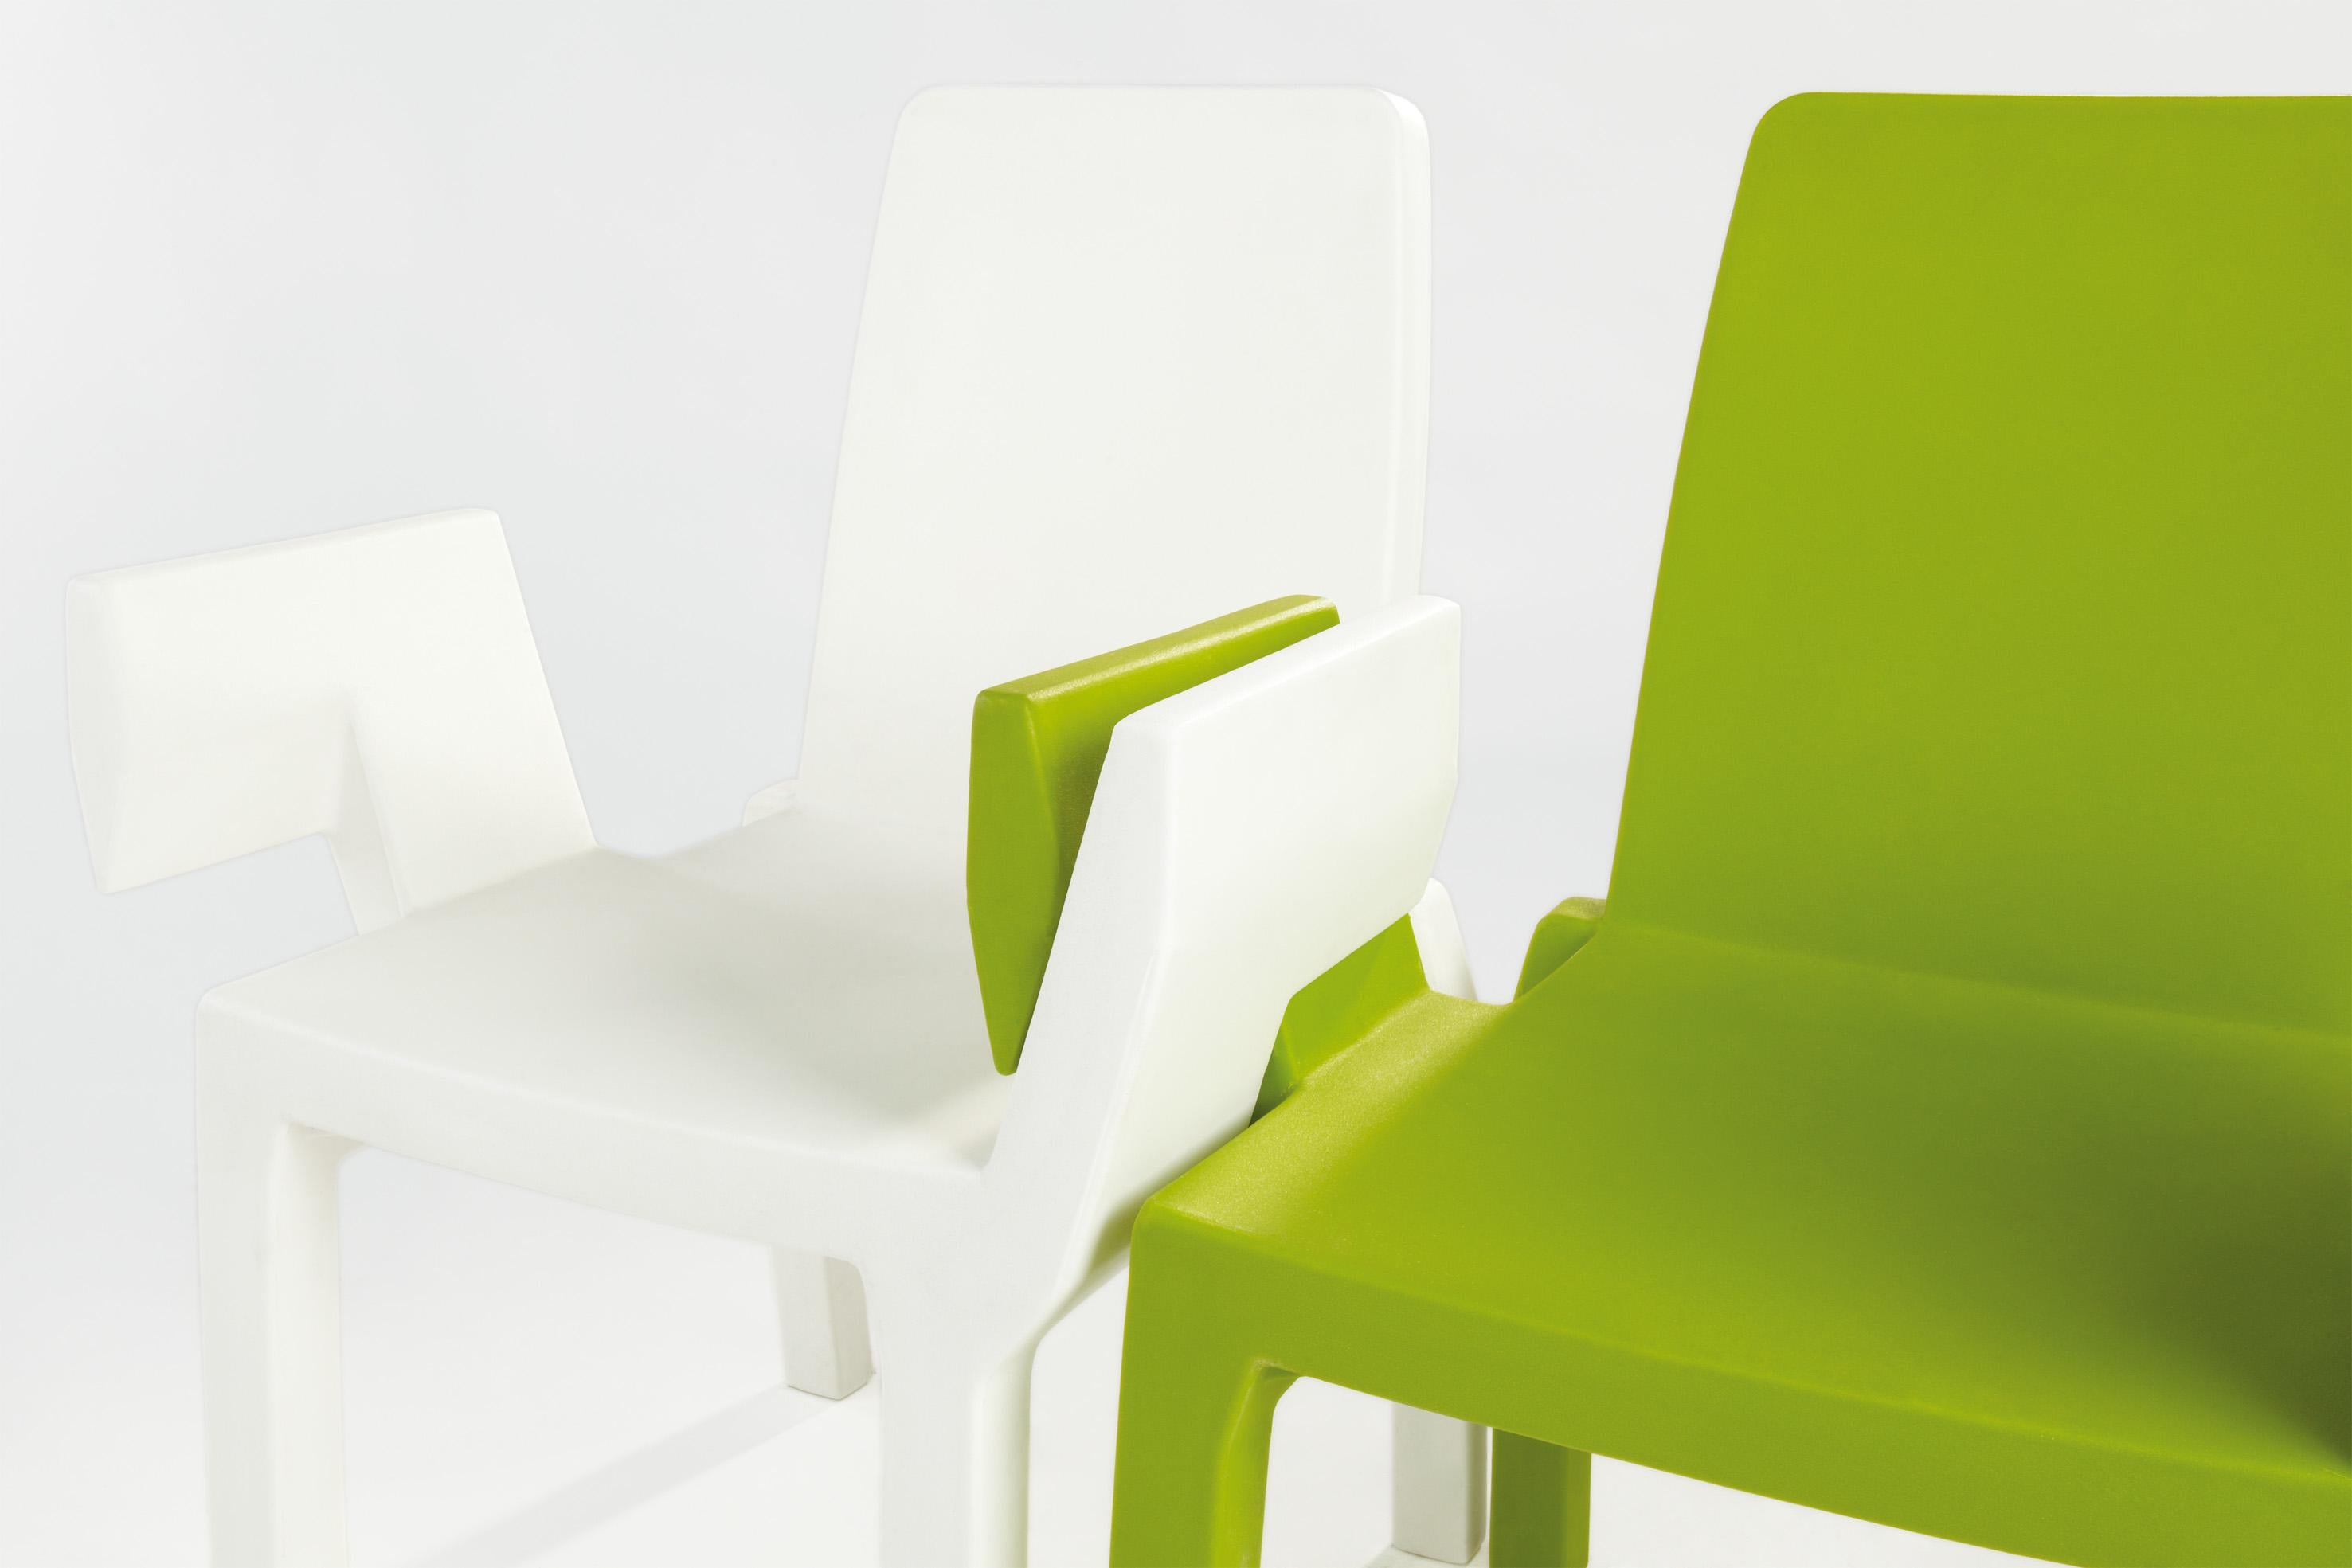 Lime Green Doublix Stuhl von Stirum Design
Abmessungen: T 57 x B 61 x H 88 cm. Sitzhöhe: 43 cm.
MATERIALEN: Polyethylen.
Gewicht: 10 kg.

Erhältlich in verschiedenen Farbvarianten. Dieses Produkt ist für die Verwendung im Innen- und Außenbereich